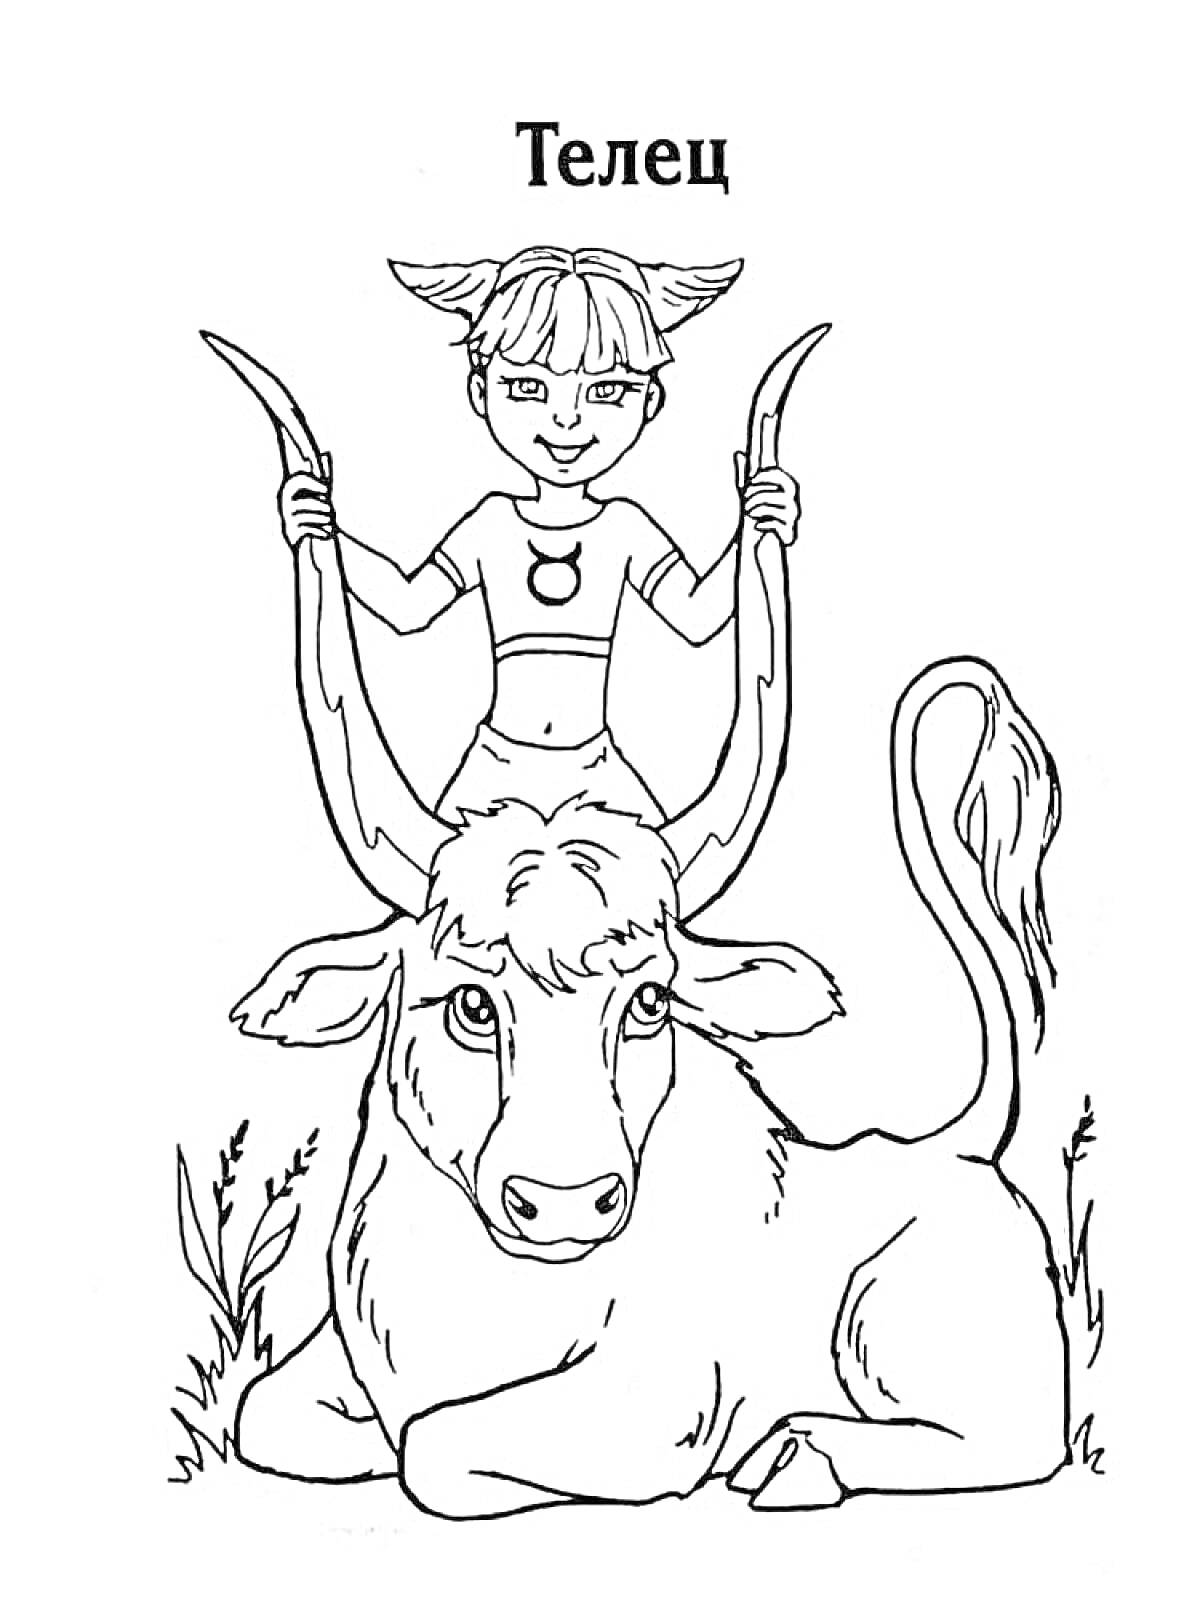 Раскраска Телец с рогами в руках, знак зодиака на одежде, лежащий бык с хвостом